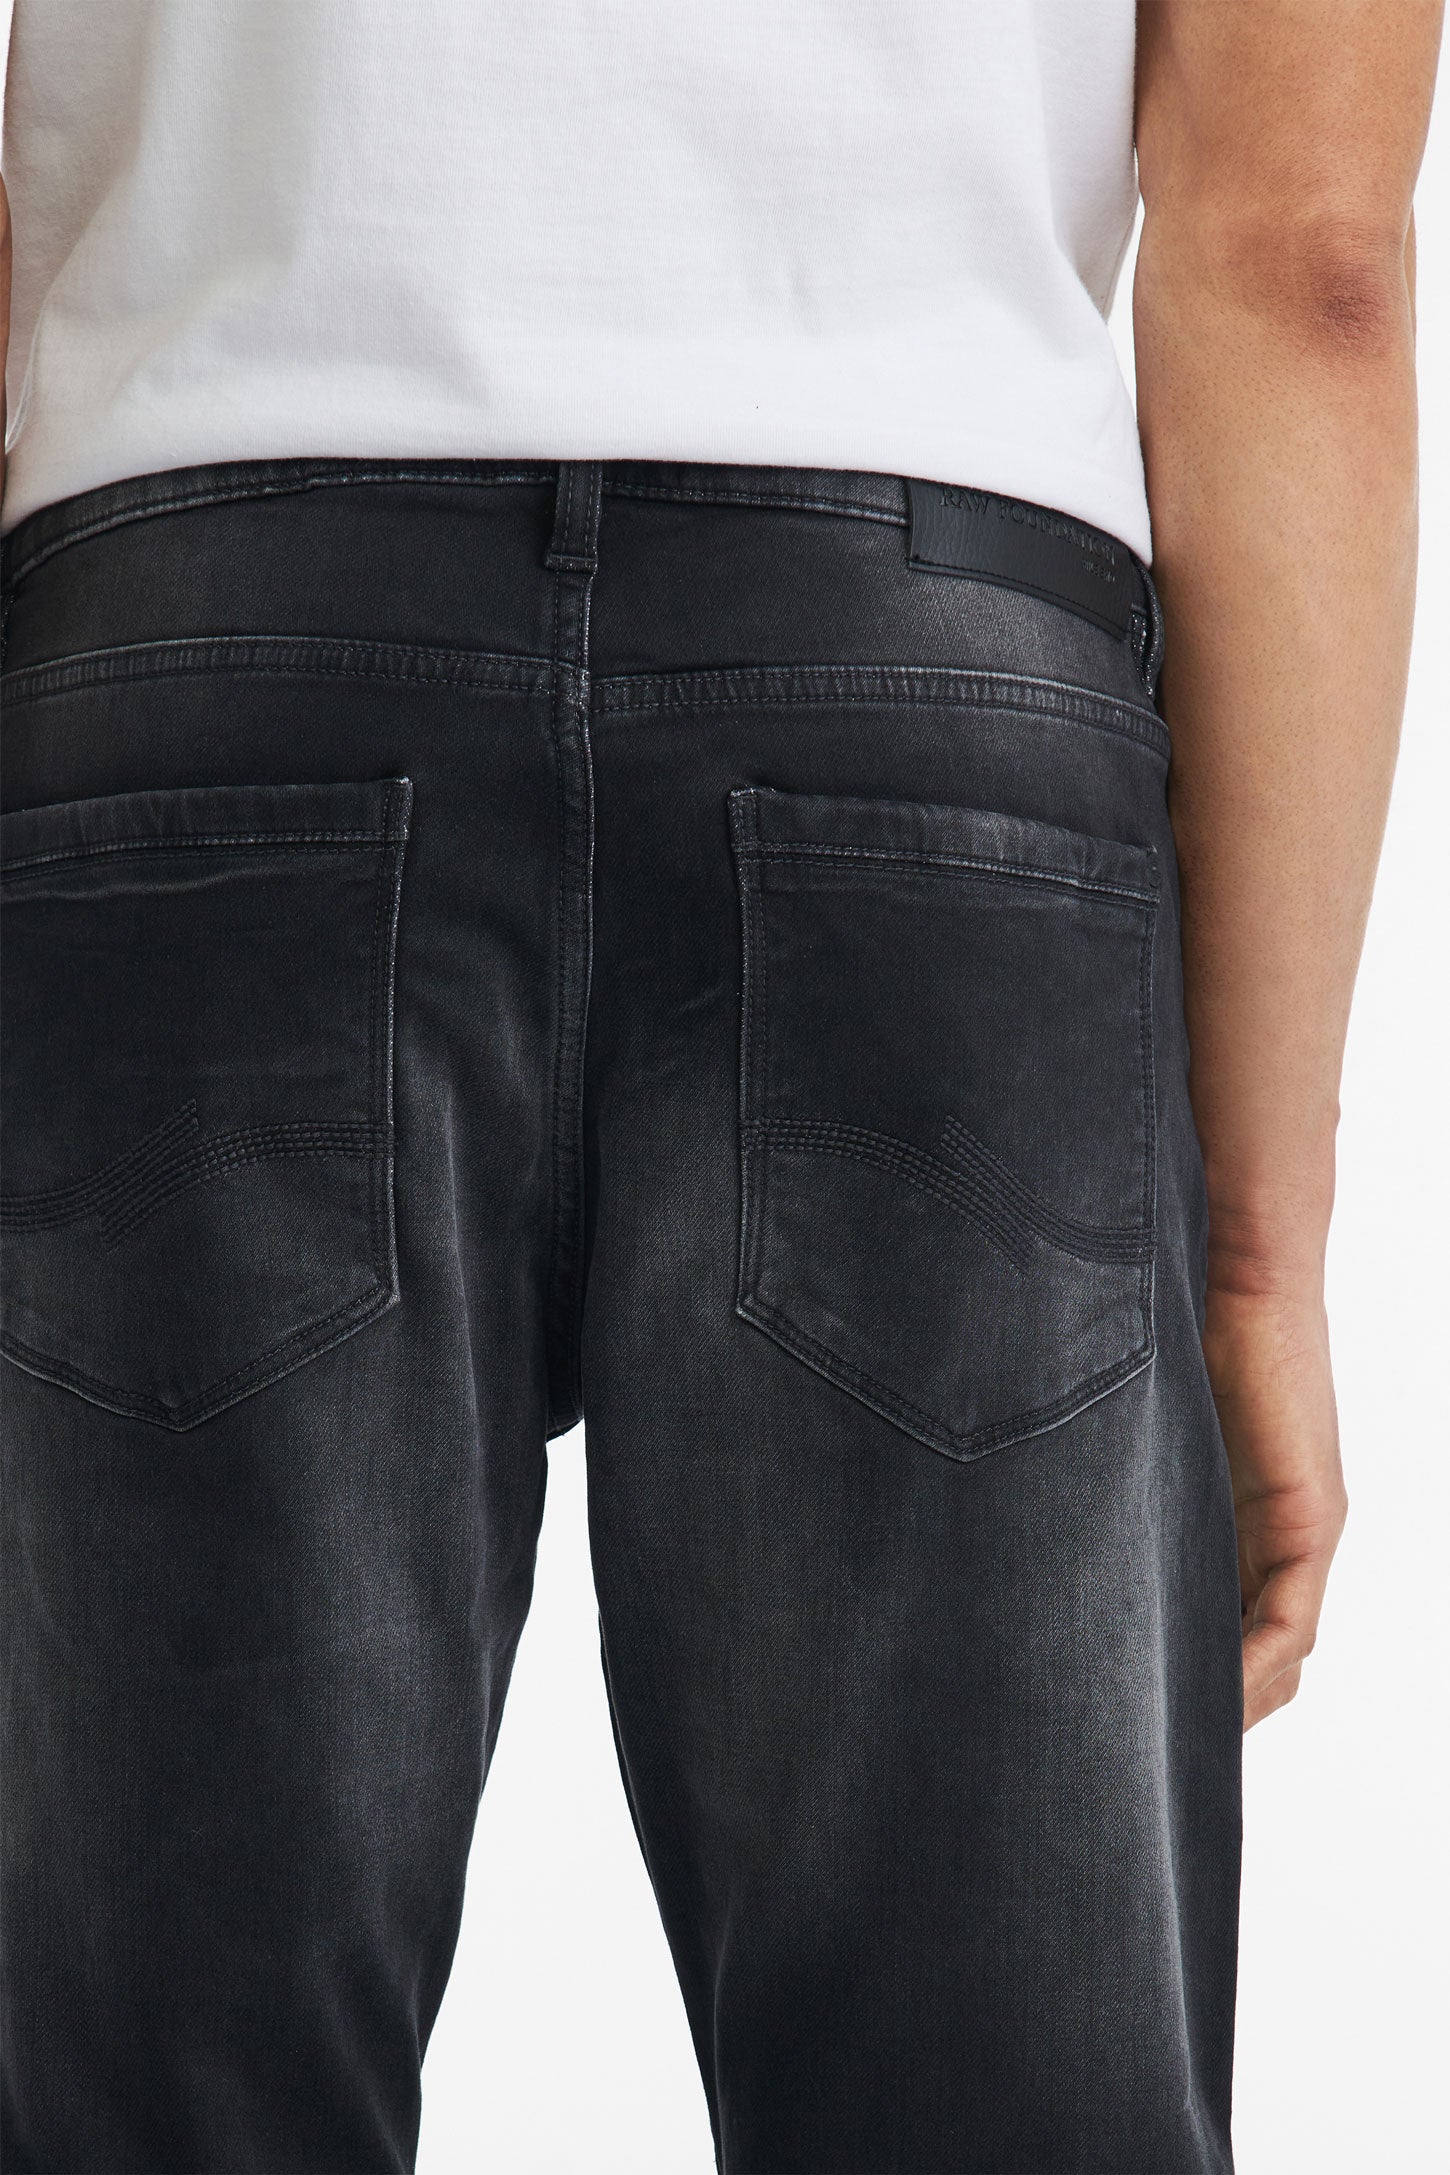 Jeans gris foncé coupe régulière - Homme && CHARBON